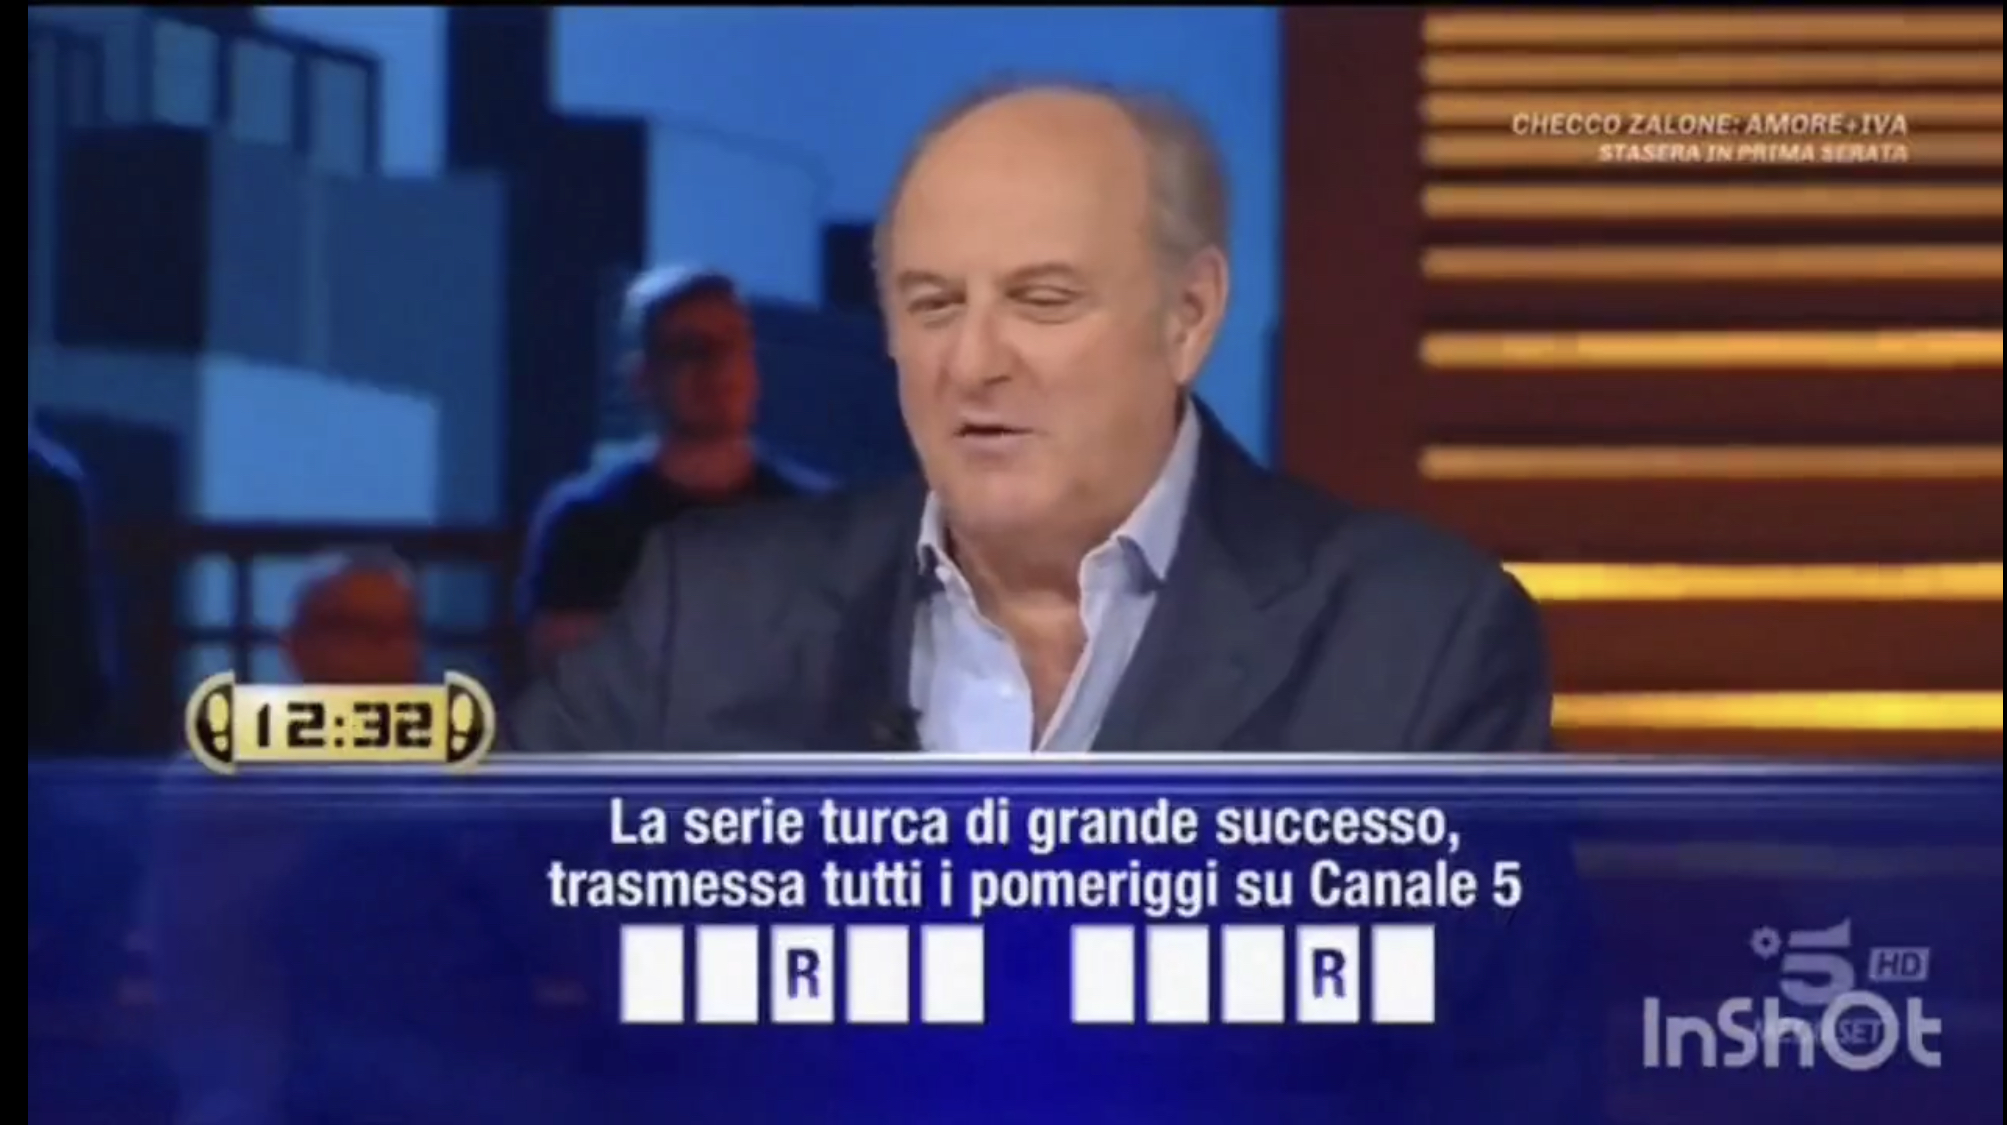 Imbarazzo per Gerry Scotti a Caduta Libera: "Tutti i giorni su Canale5 ci dobbiamo beccare sta roba" (VIDEO)